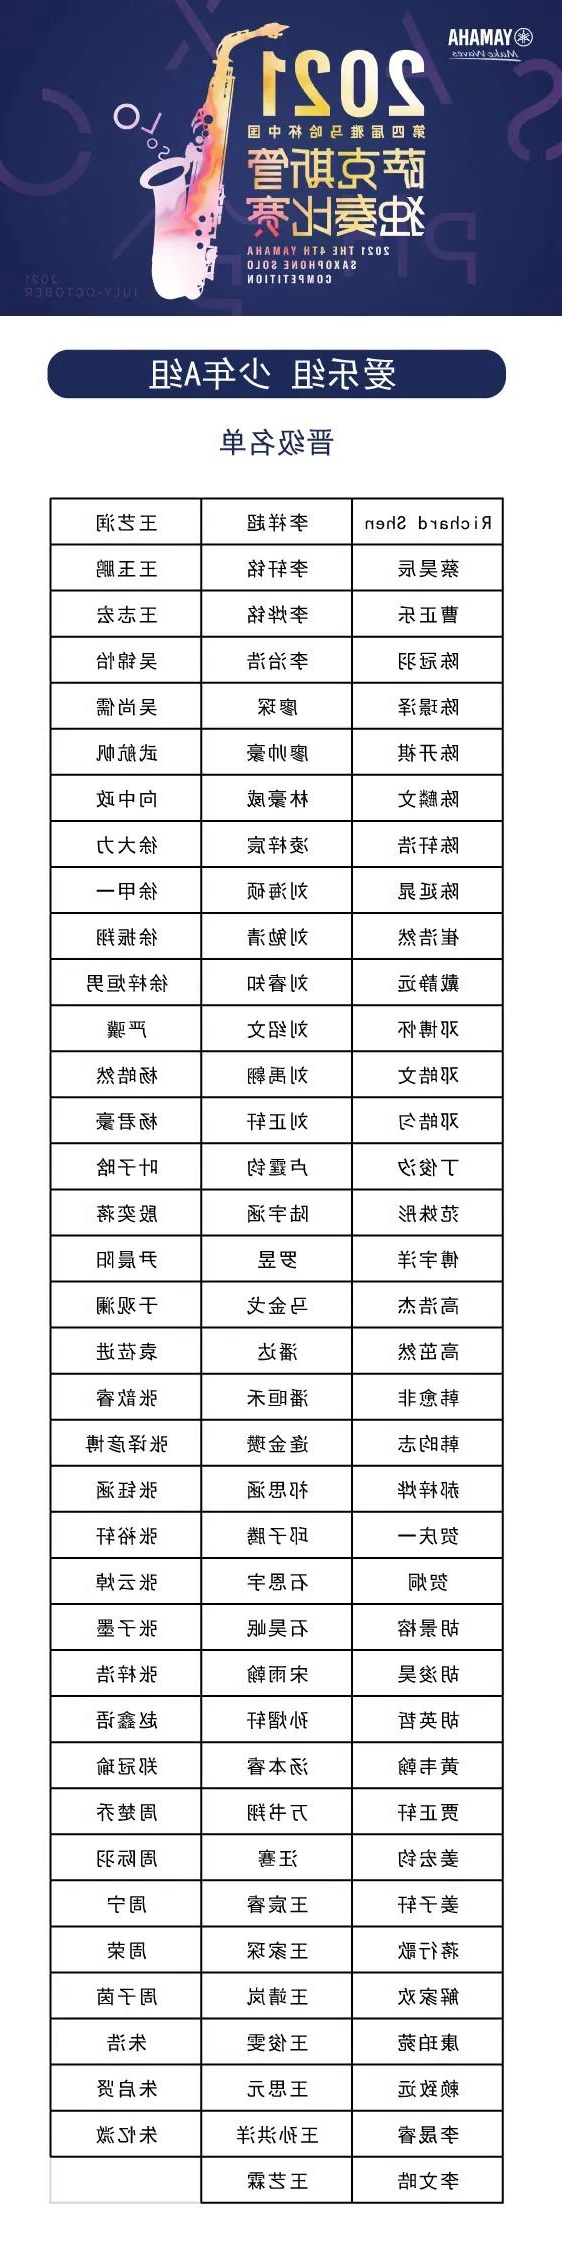 第四届“酷游ku游登陆页
杯”（中国）萨克斯管独奏比赛——决赛名单公布，决赛报名通道开启！